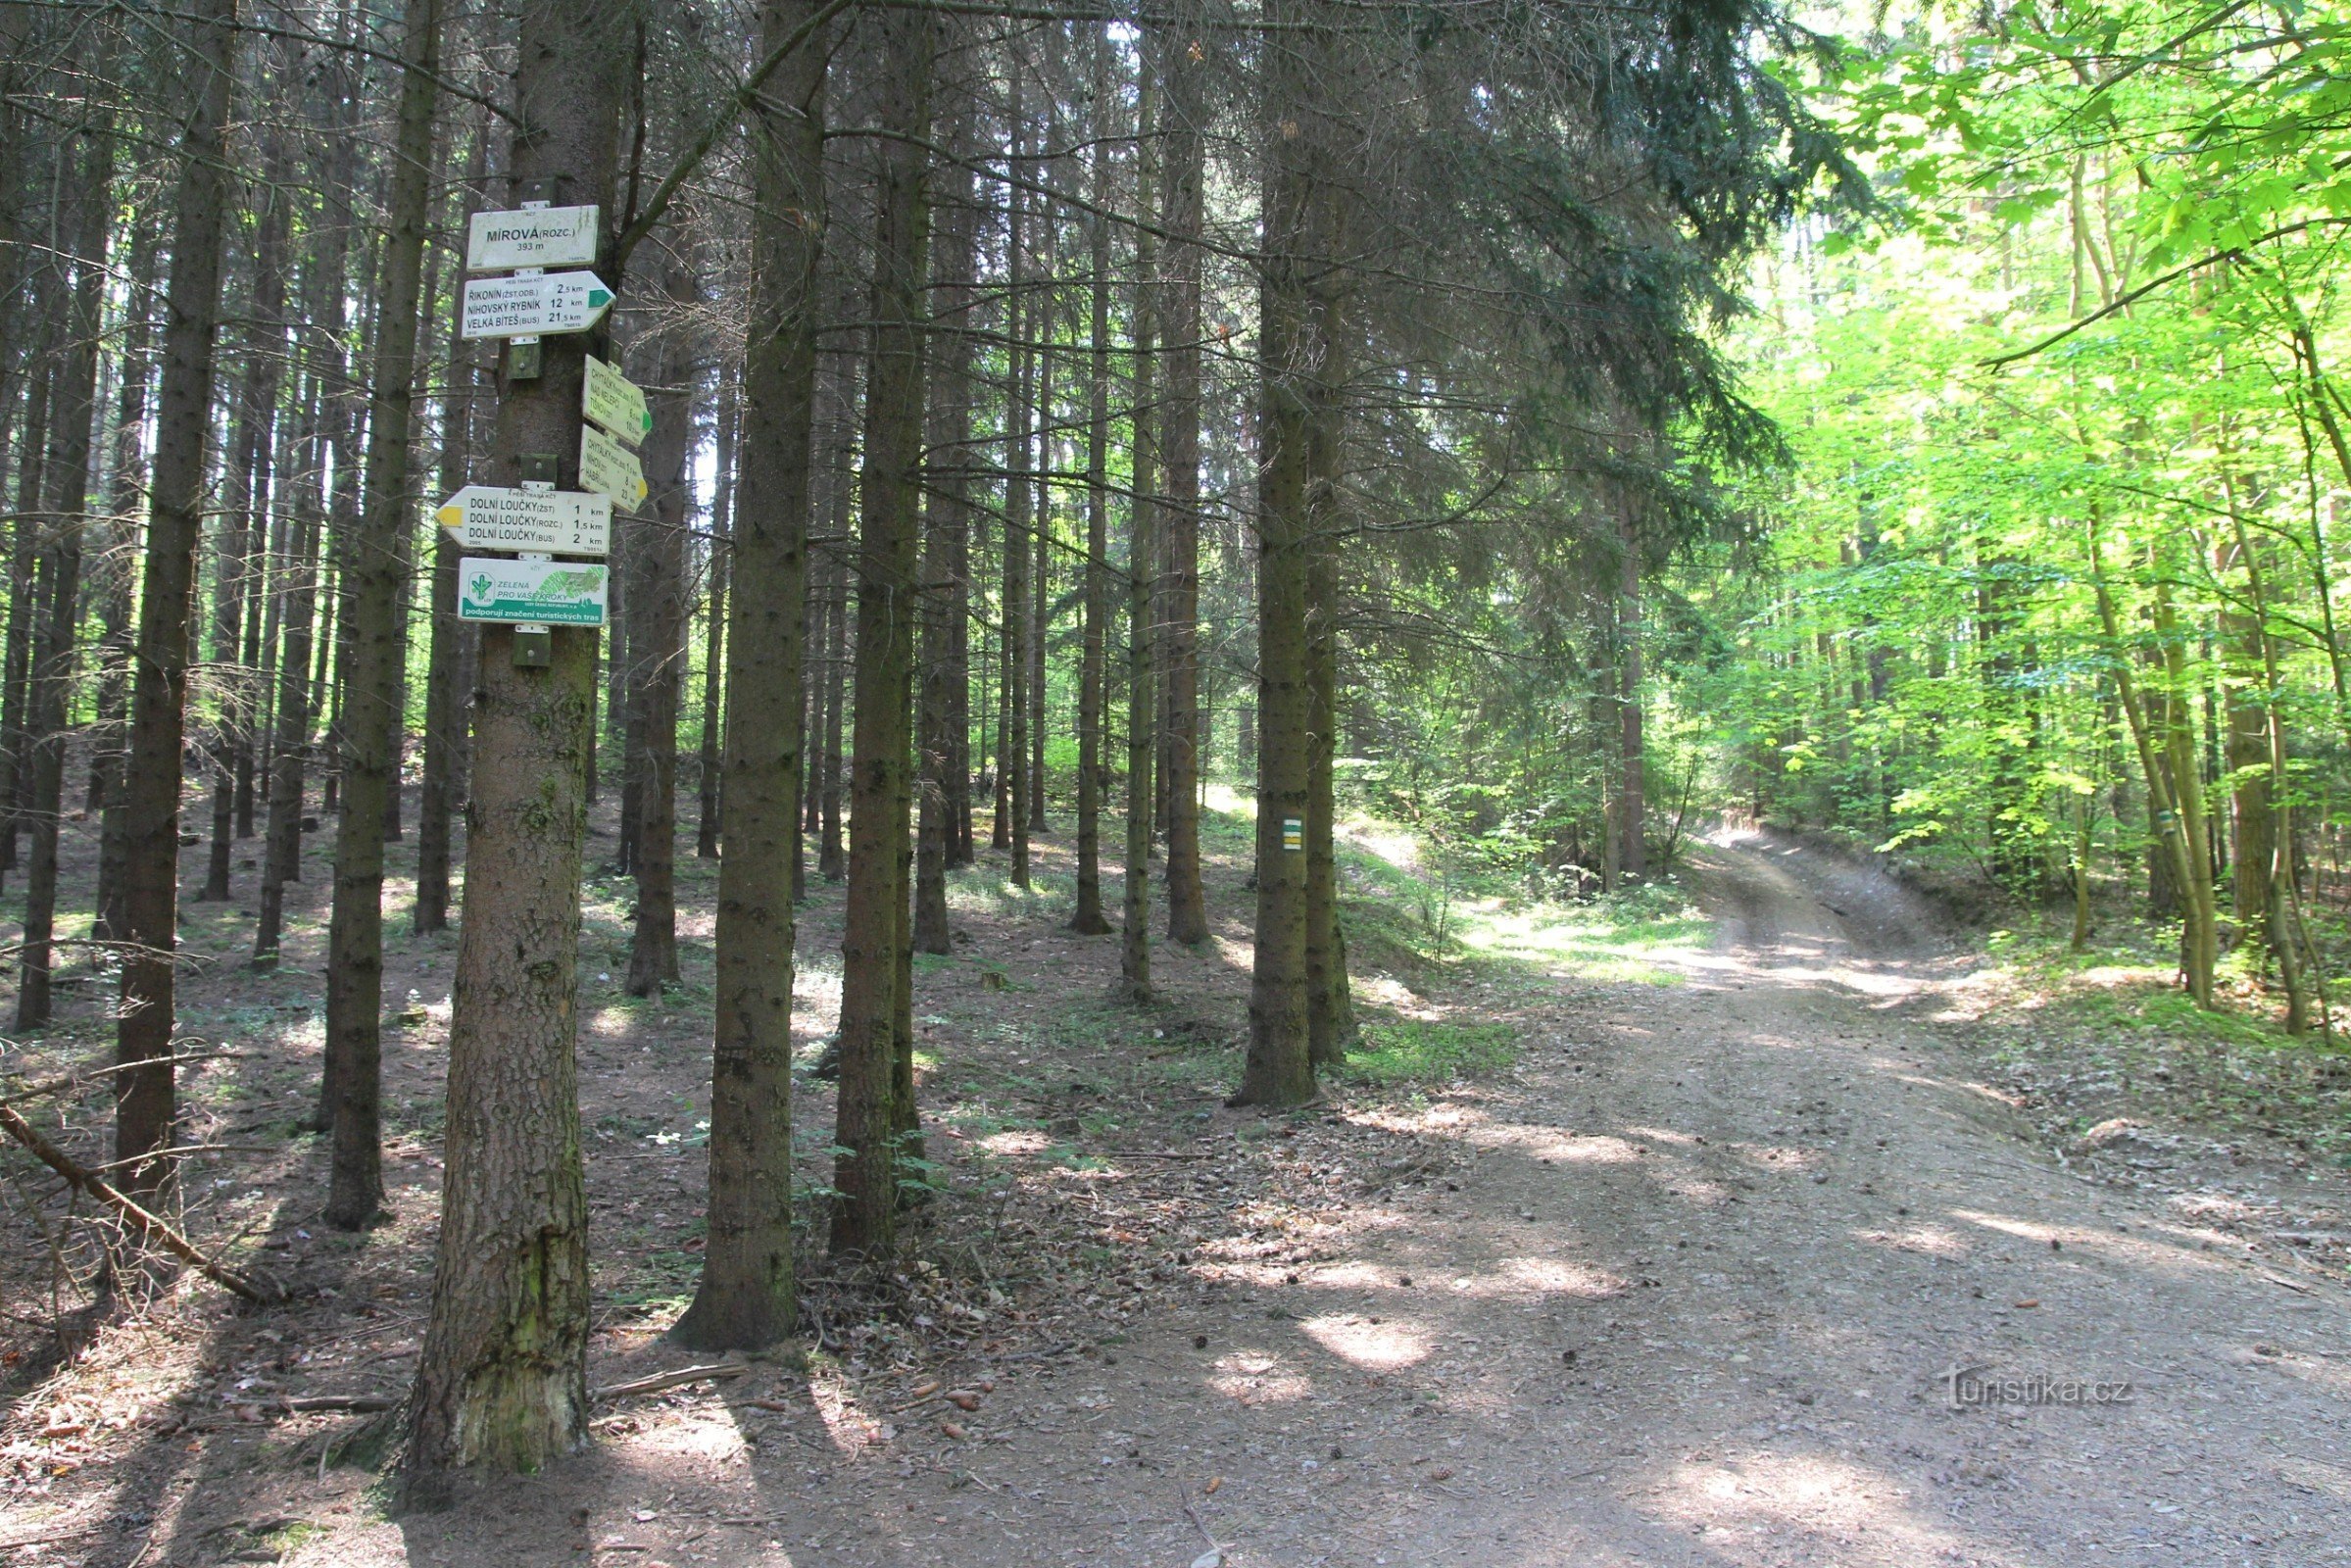 Turističko raskrižje Mírová na zelenim i žutim znakovima